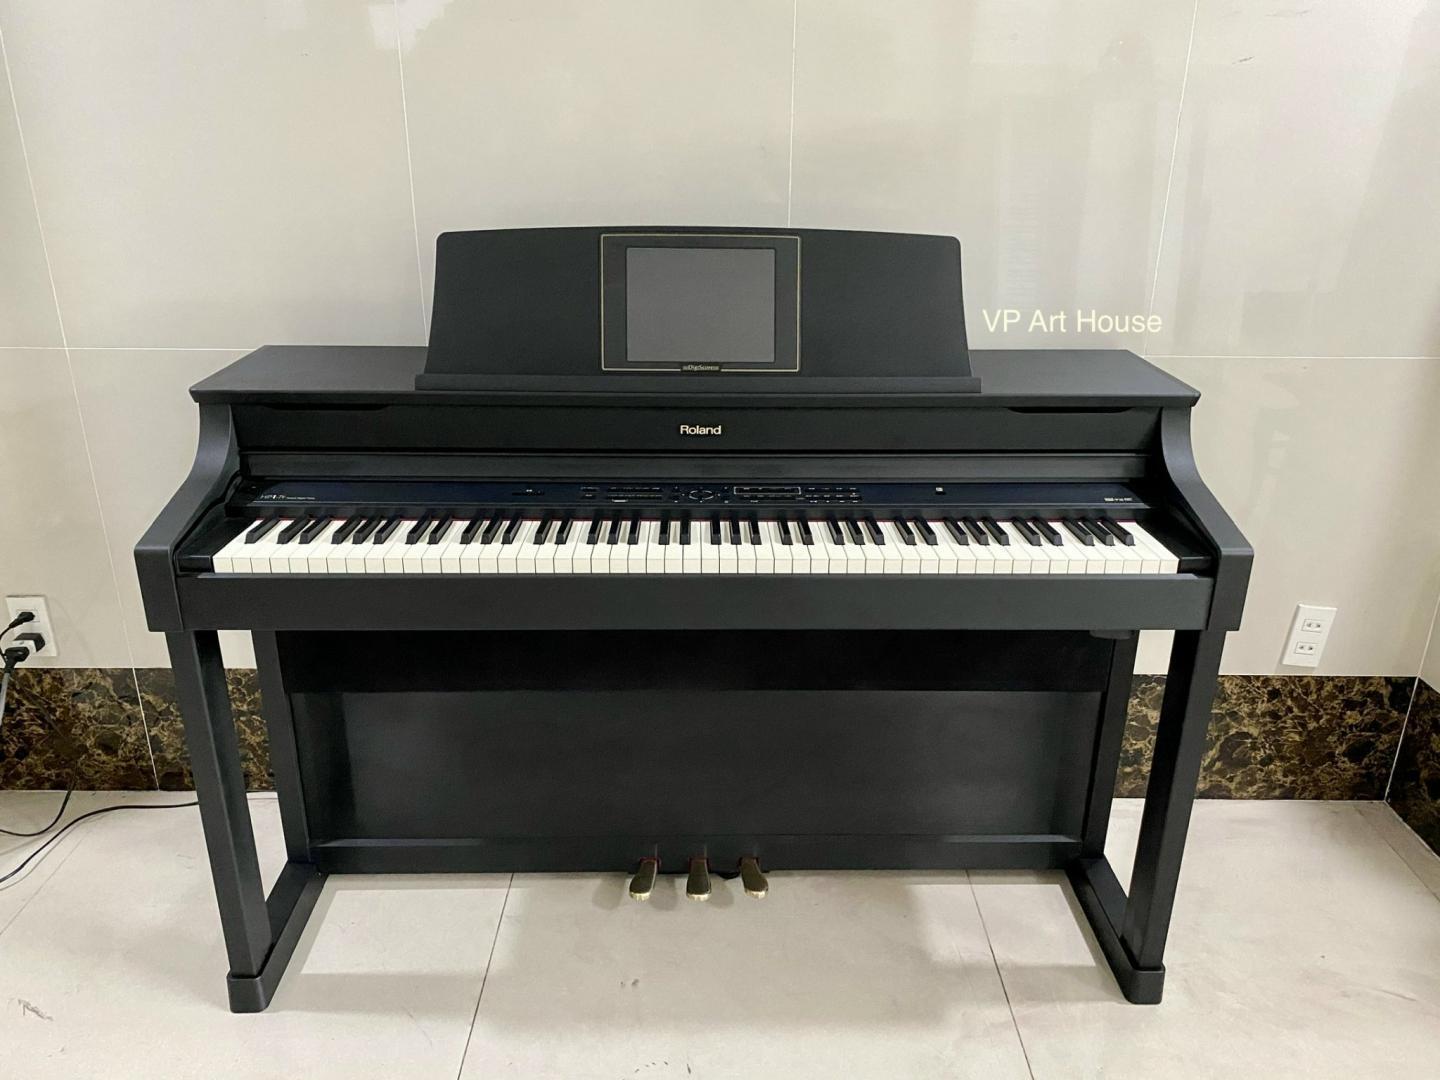 piano điện Roland HPi-7F SB